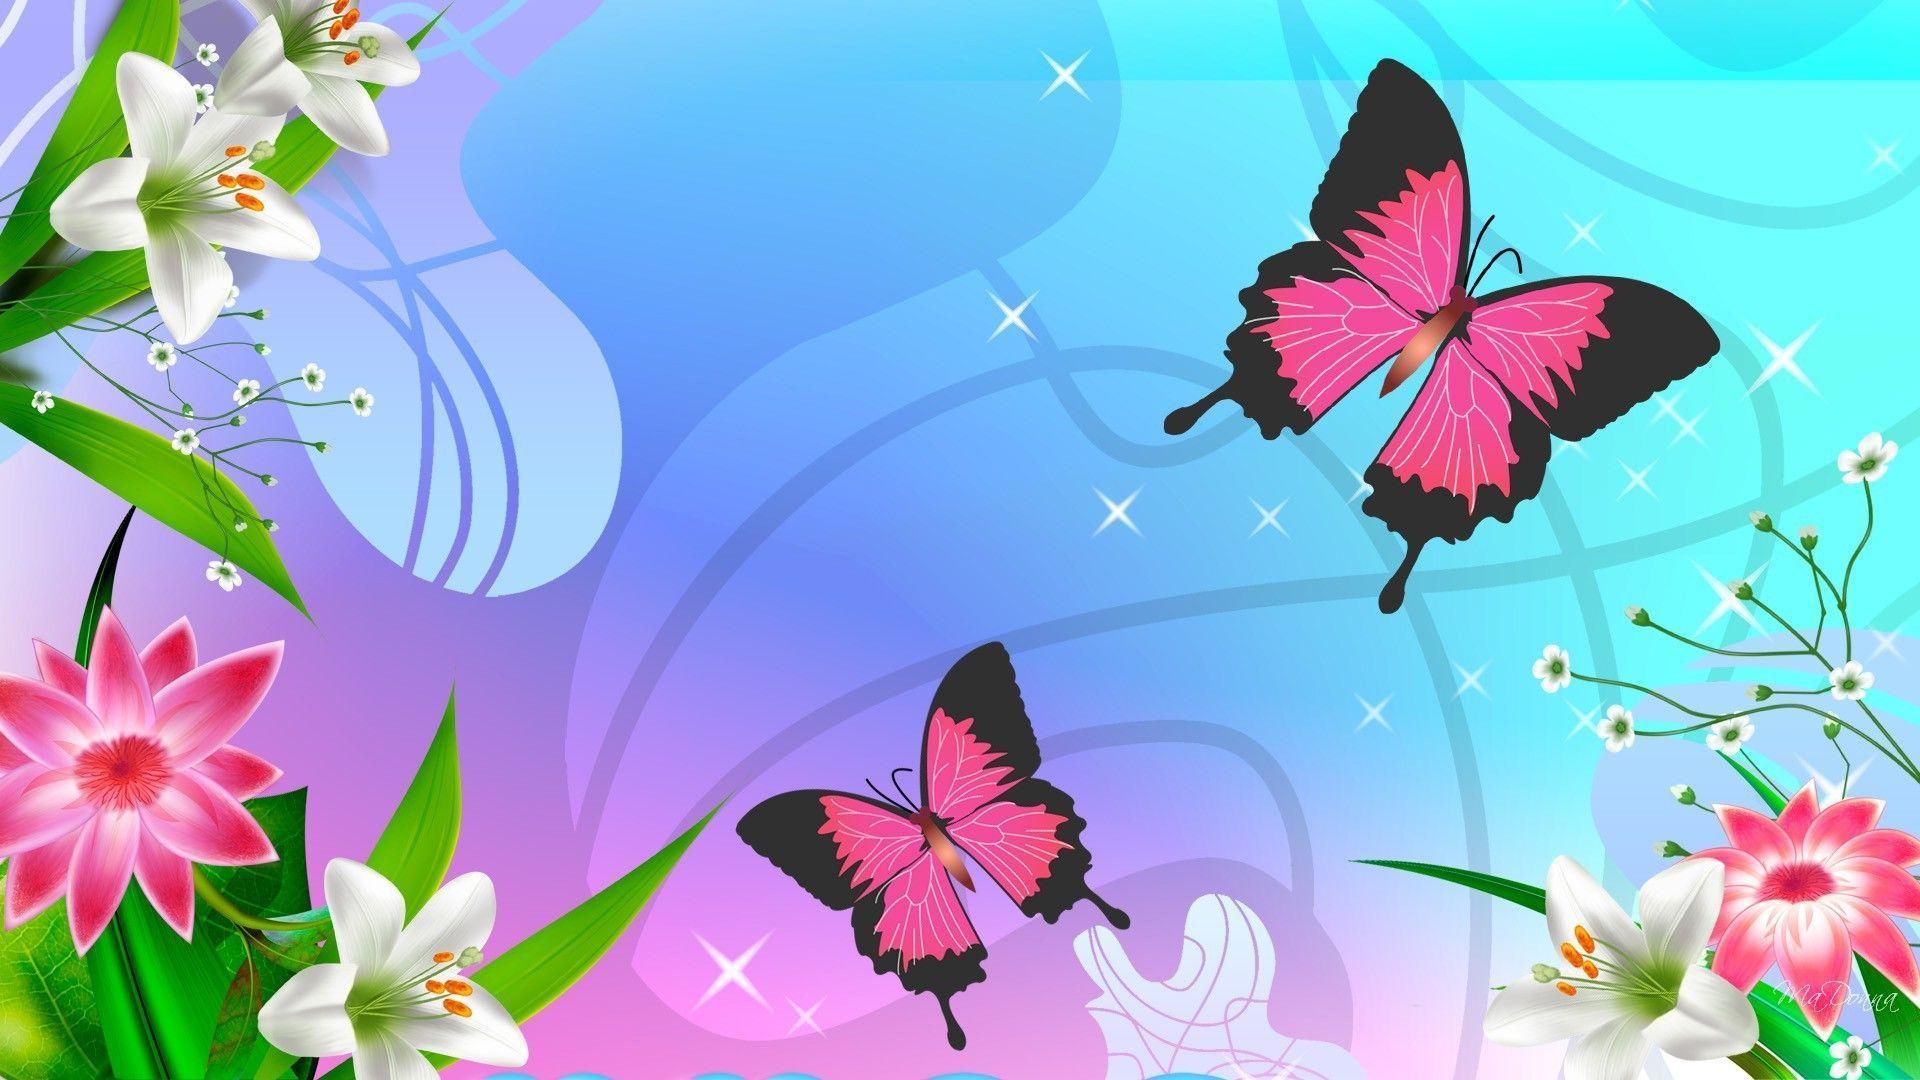 Wallpaper Butterfly